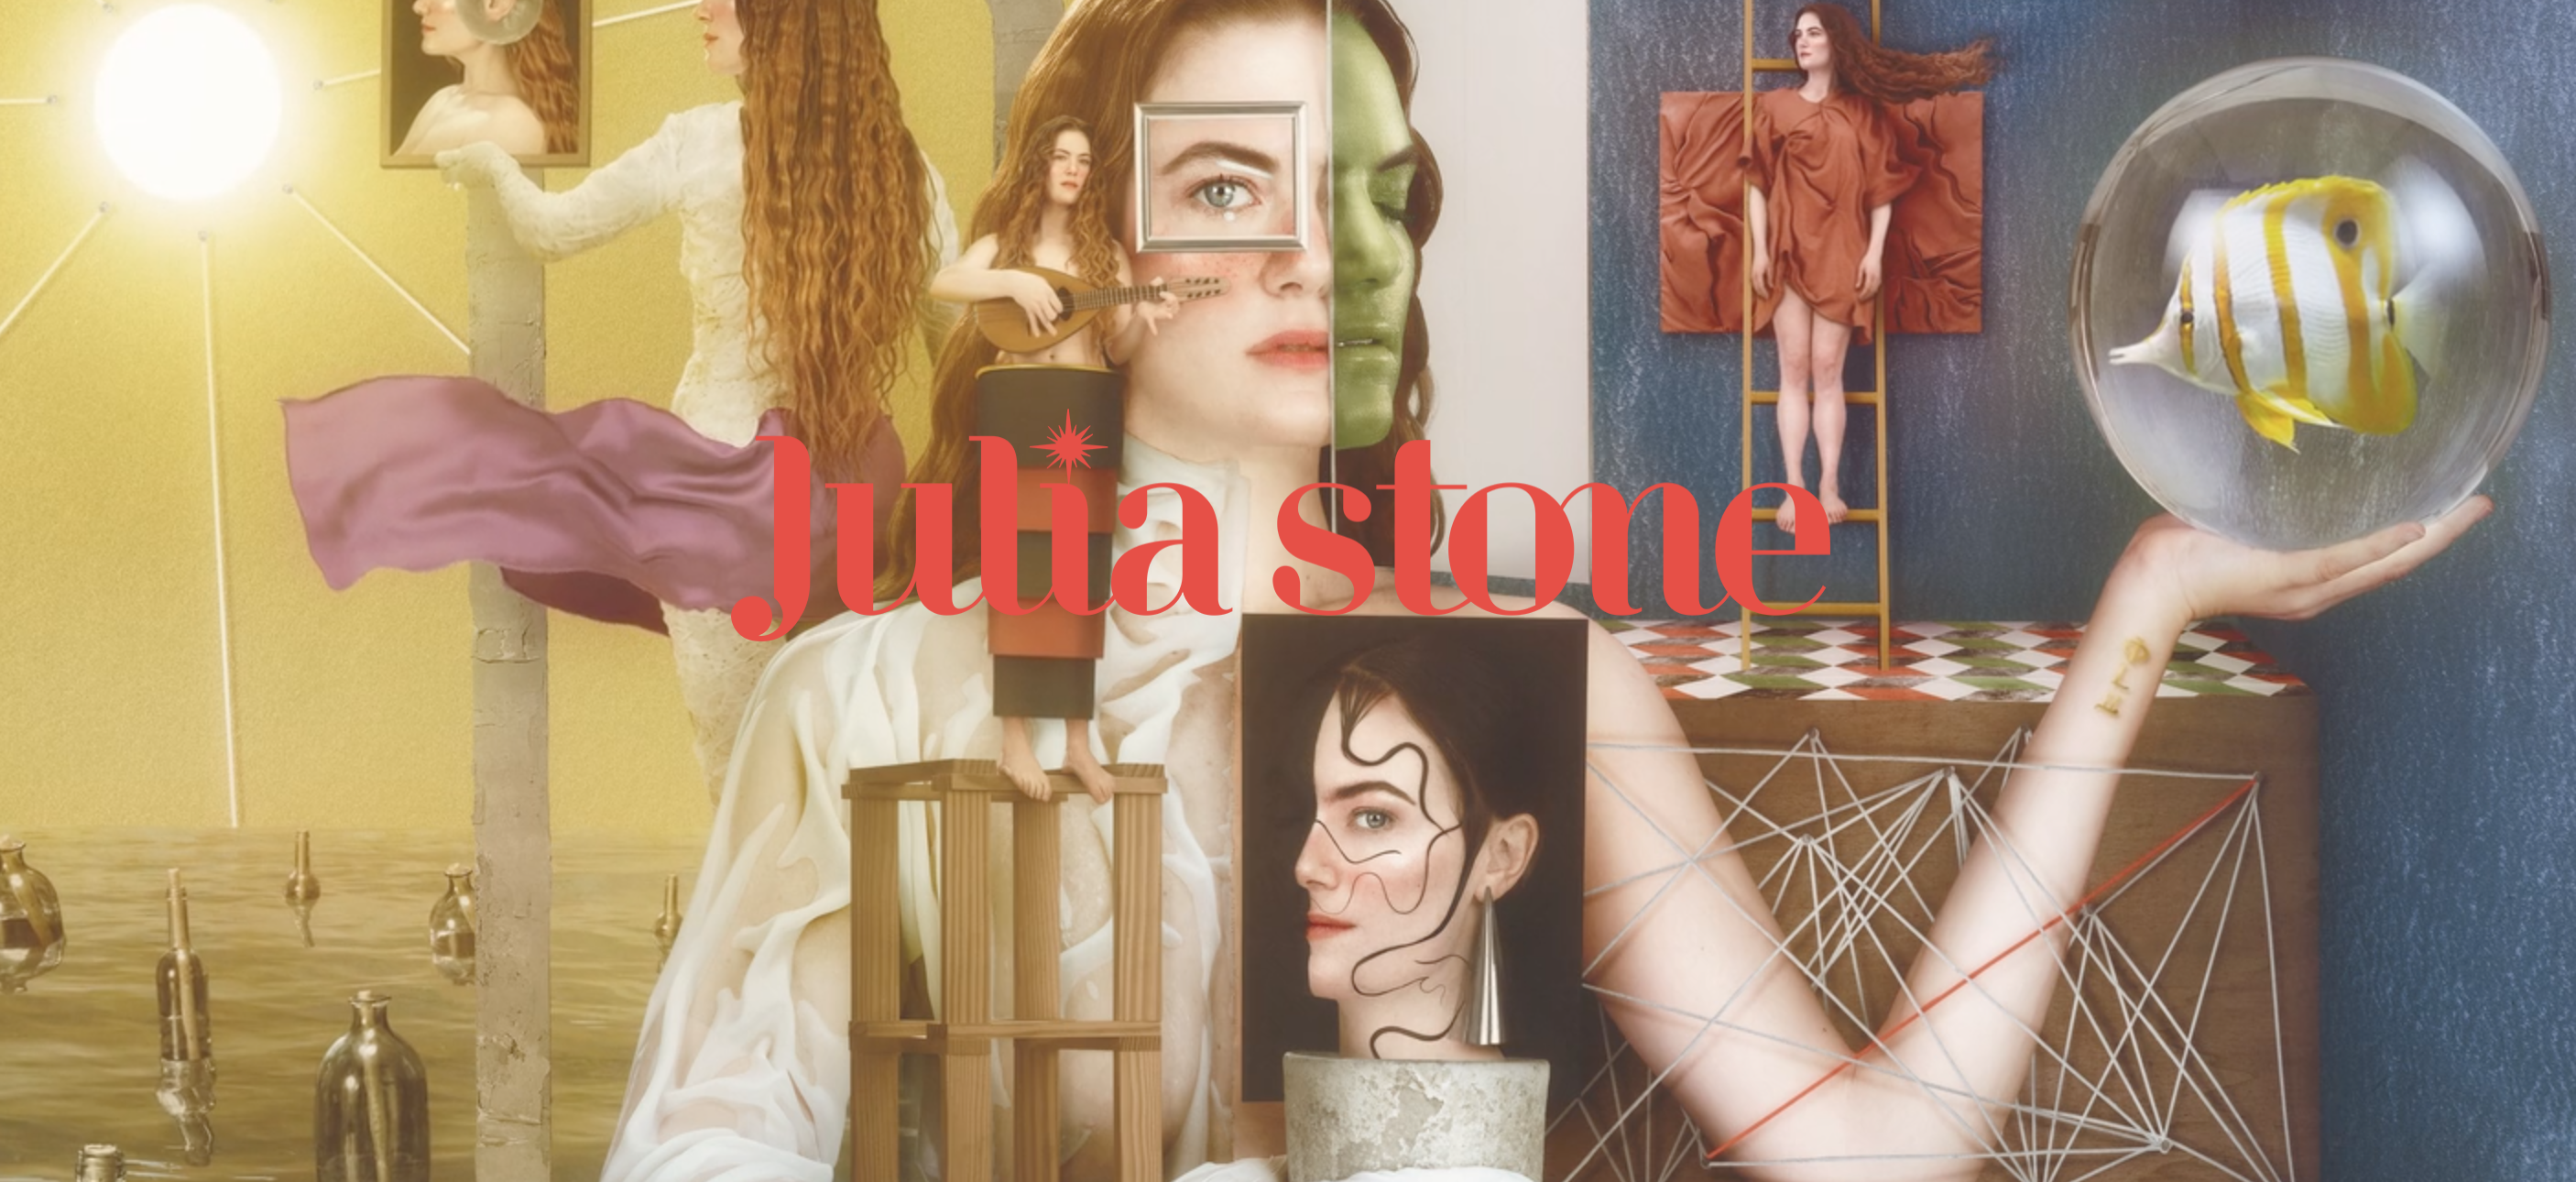 Lire la suite à propos de l’article Julia Stone fait valser Susan Sarandon et Danny Glover dans le clip de son nouveau titre « Dance ».